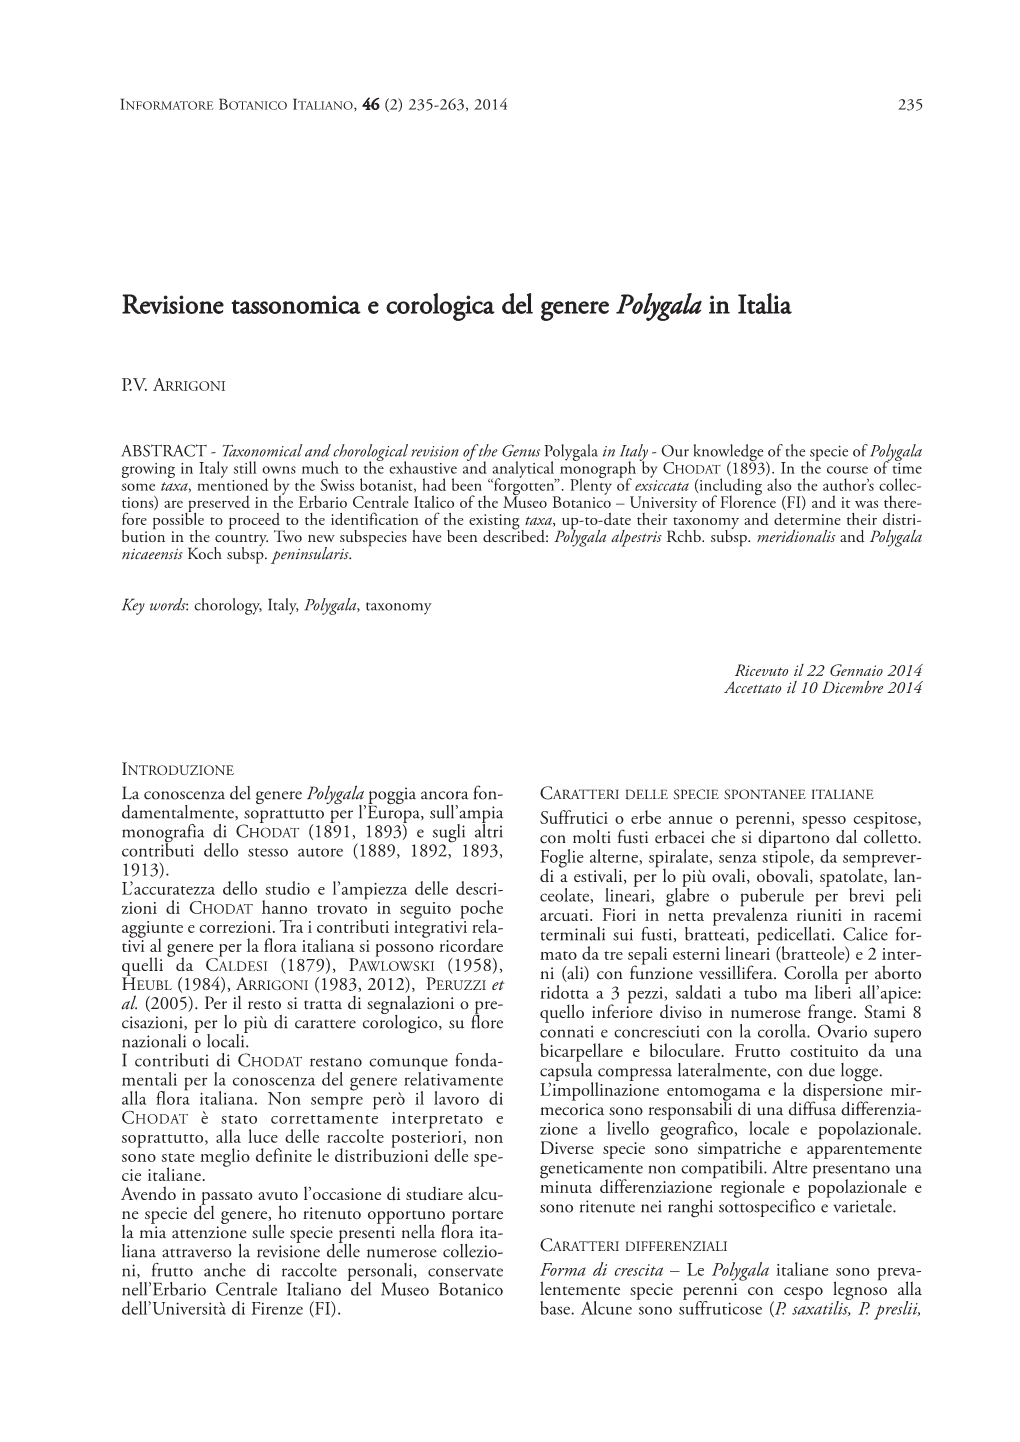 Revisione Tassonomica E Corologica Del Genere Polygala in Italia